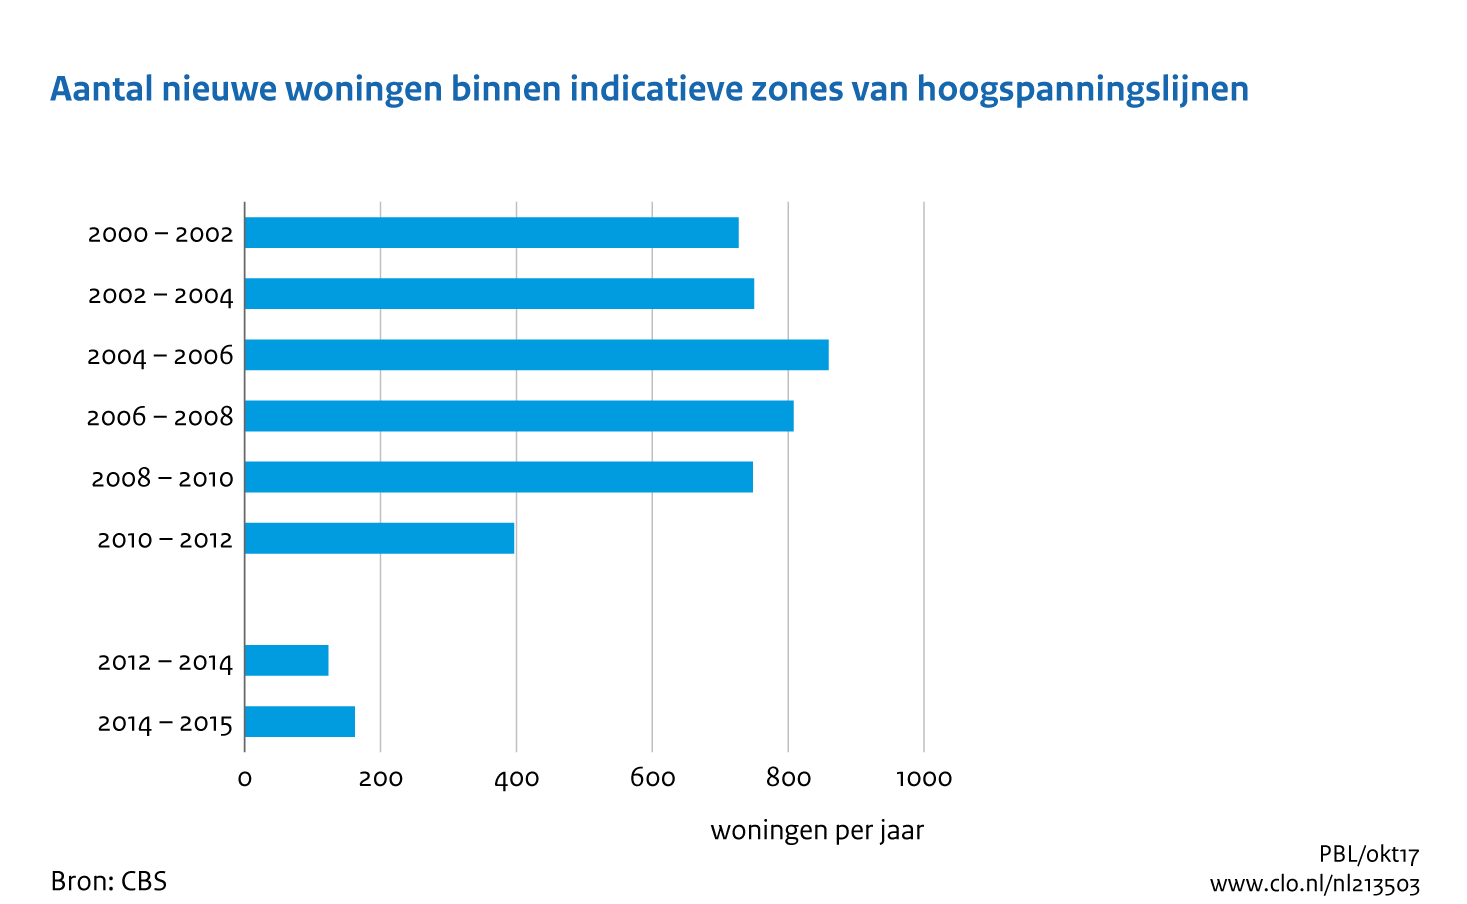 Figuur Aantal nieuwe woningen binnen indicatieve zones van hoogspanningslijnen, 2000-2015 . In de rest van de tekst wordt deze figuur uitgebreider uitgelegd.